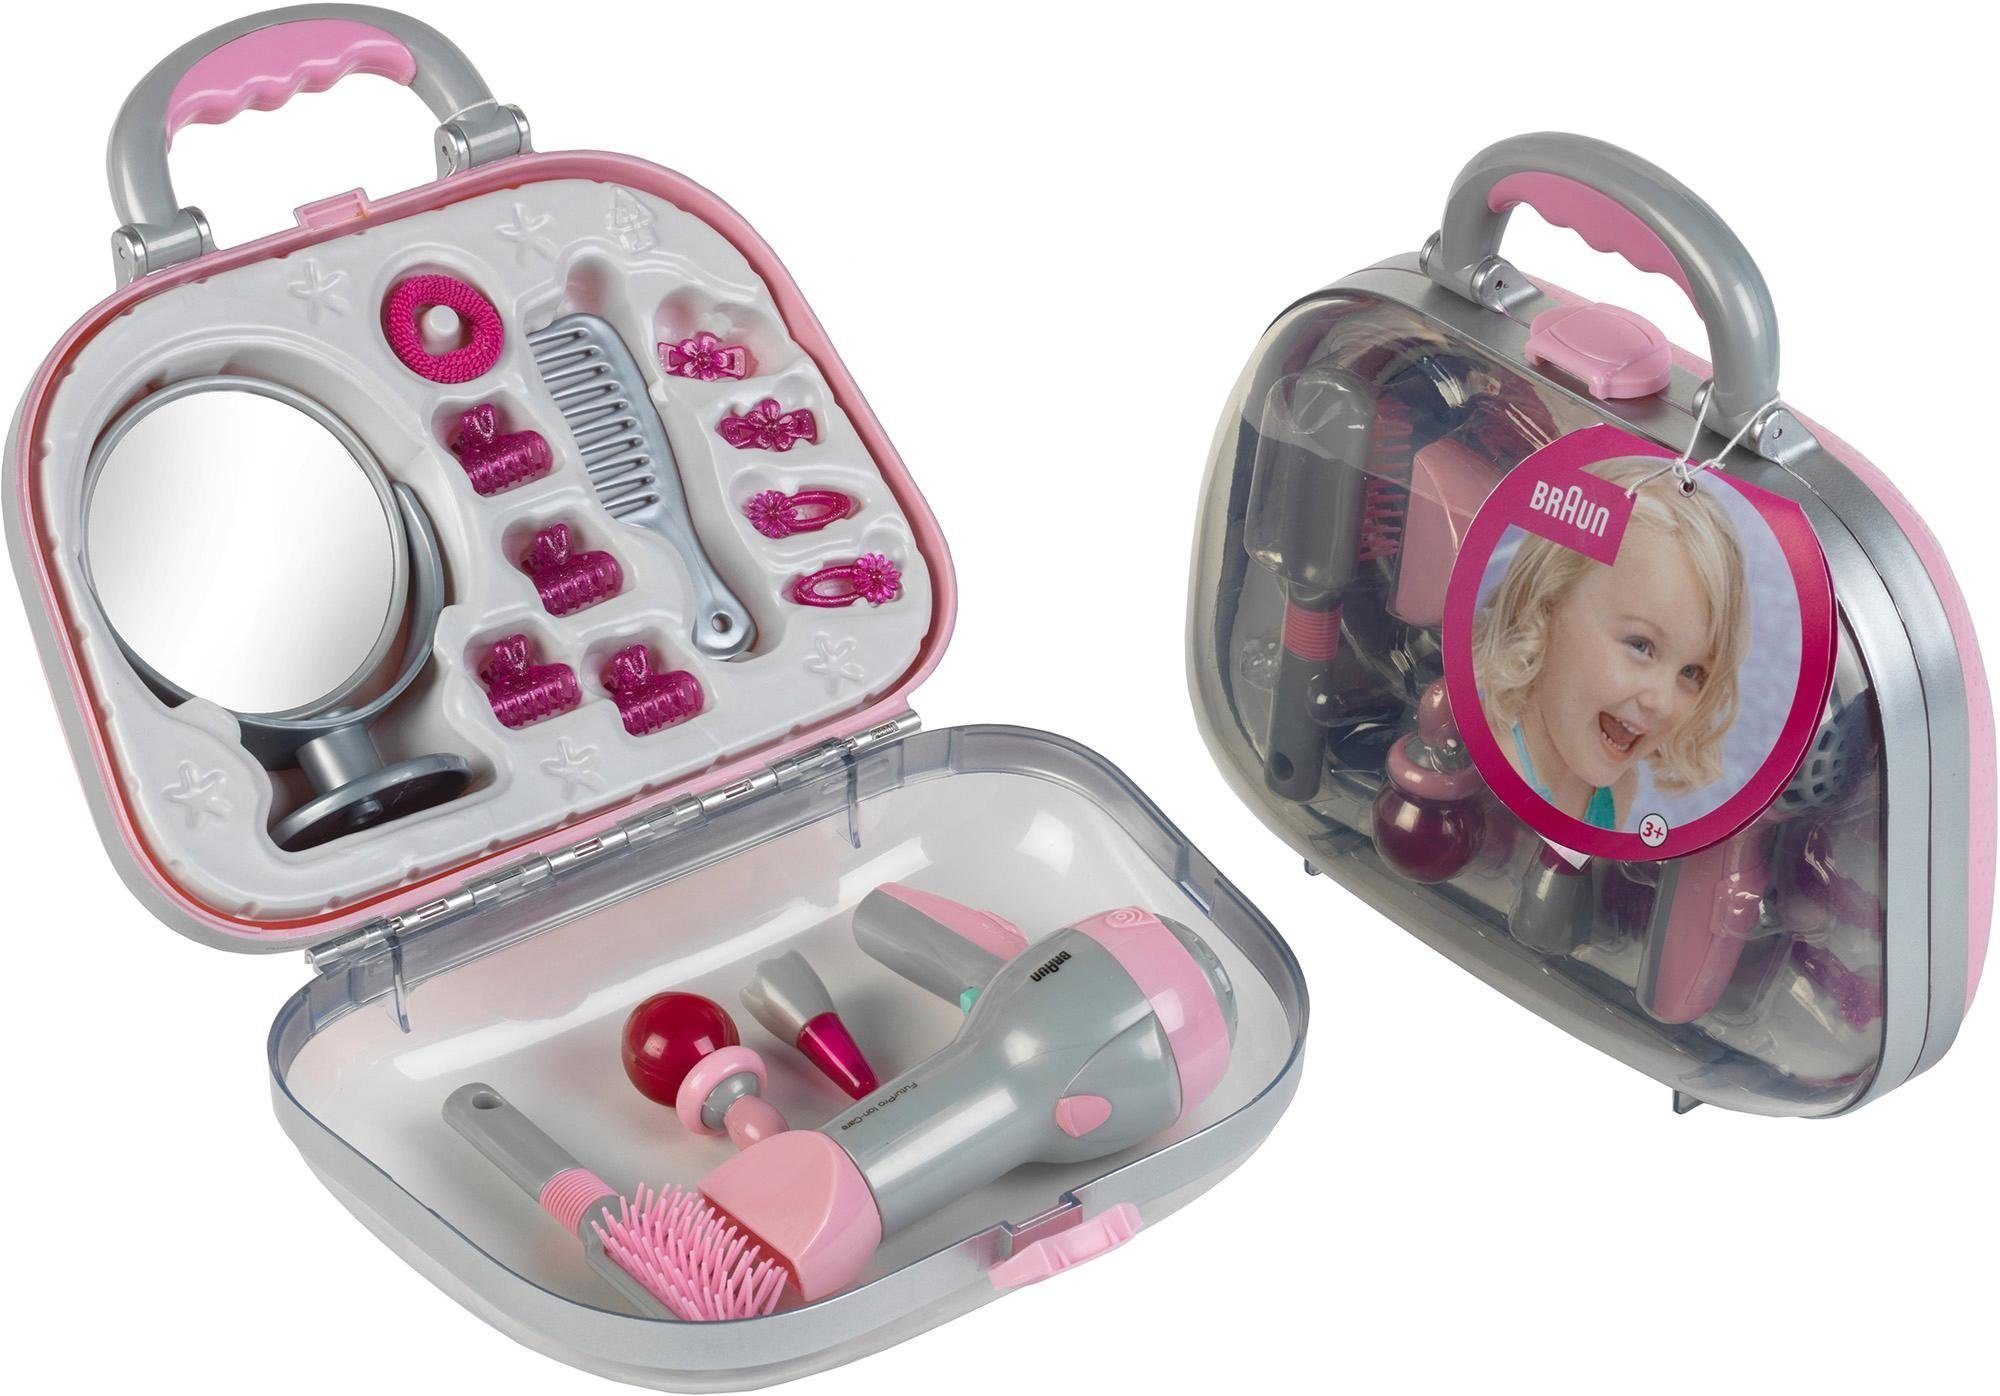 Klein Spielzeug-Frisierkoffer Koffer mit Braun Fön und Zubehör